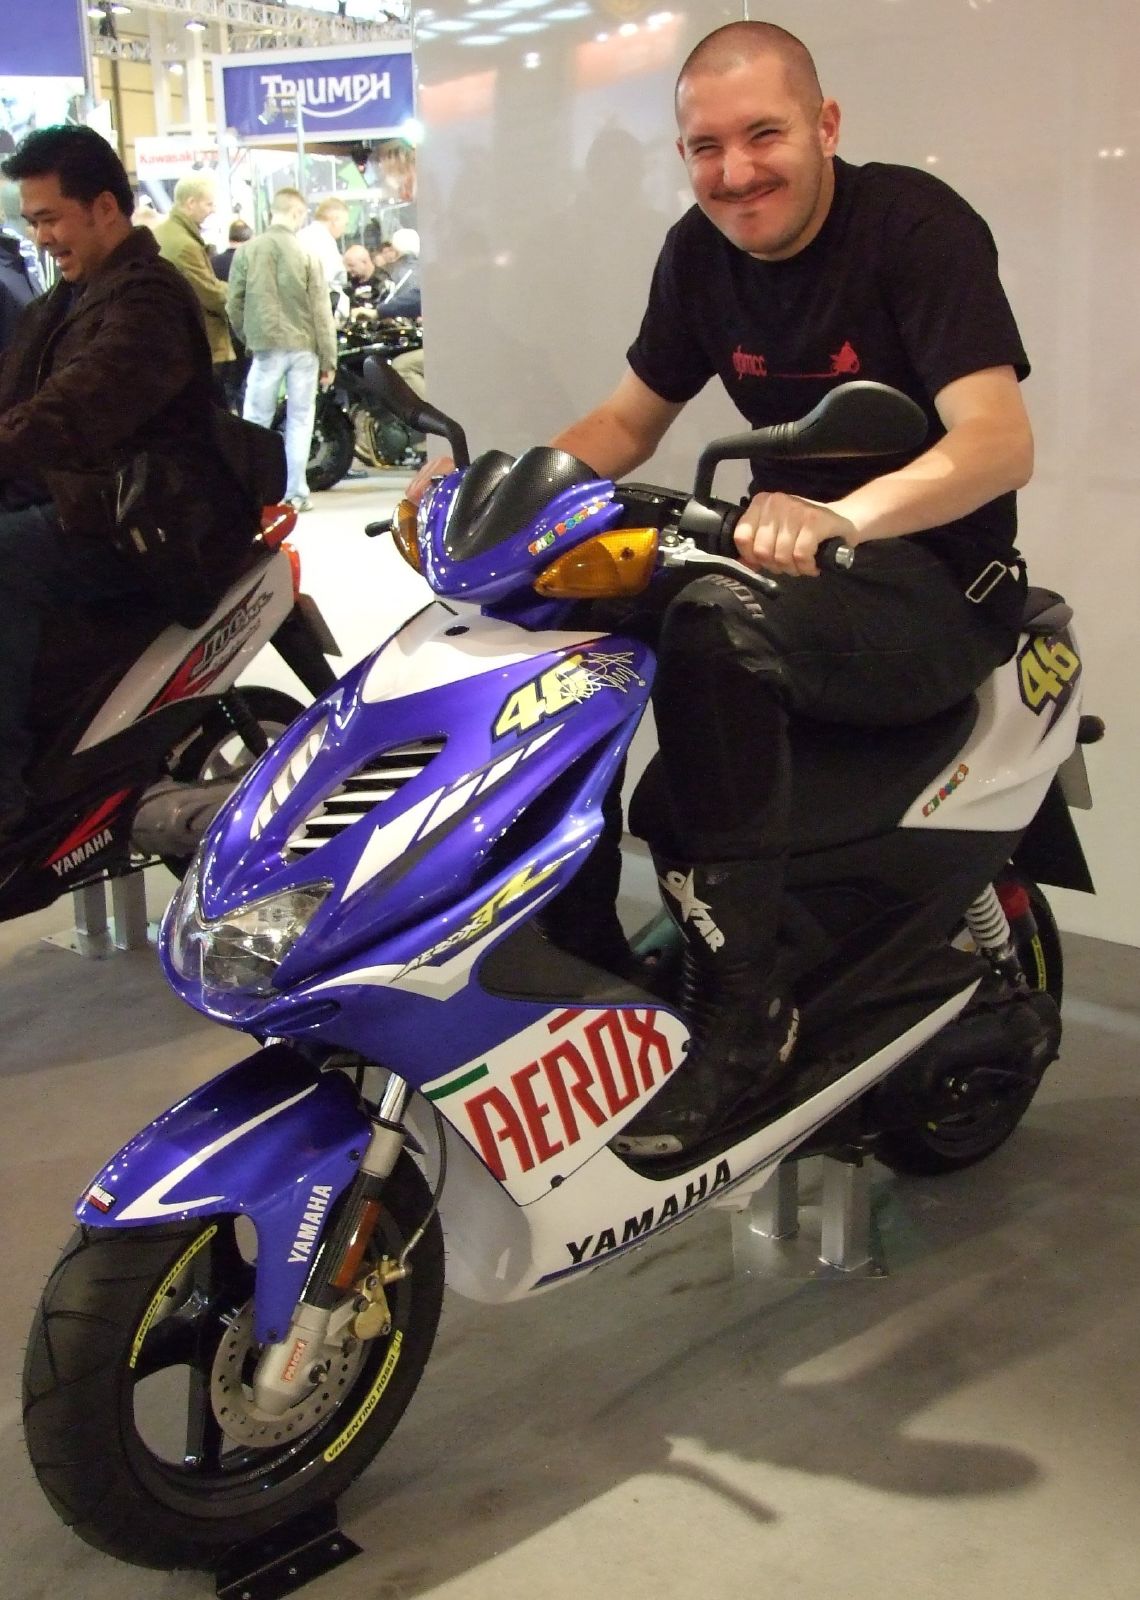 Yamaha Aerox